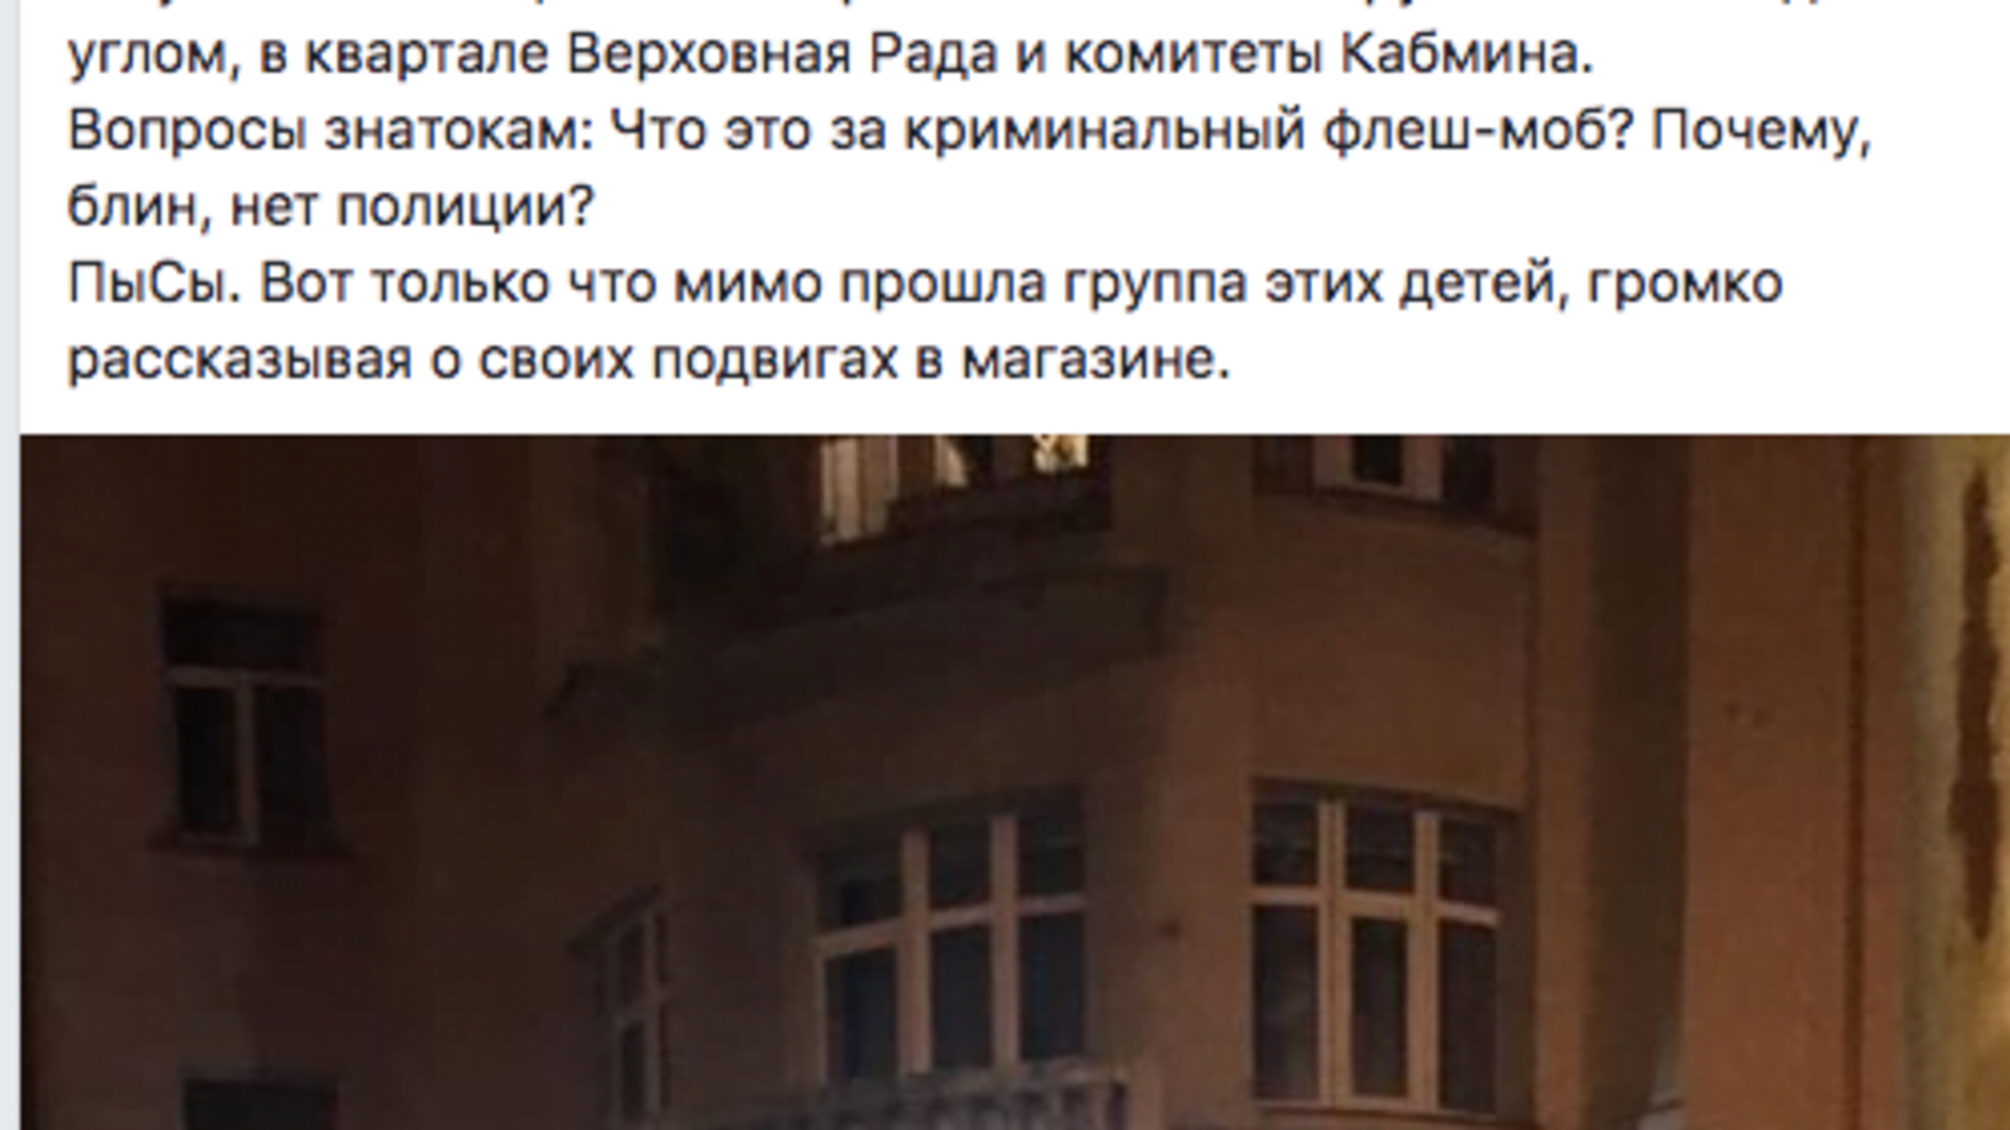 Натовп із мародерів-підлітків пограбував магазин у центрі Києва